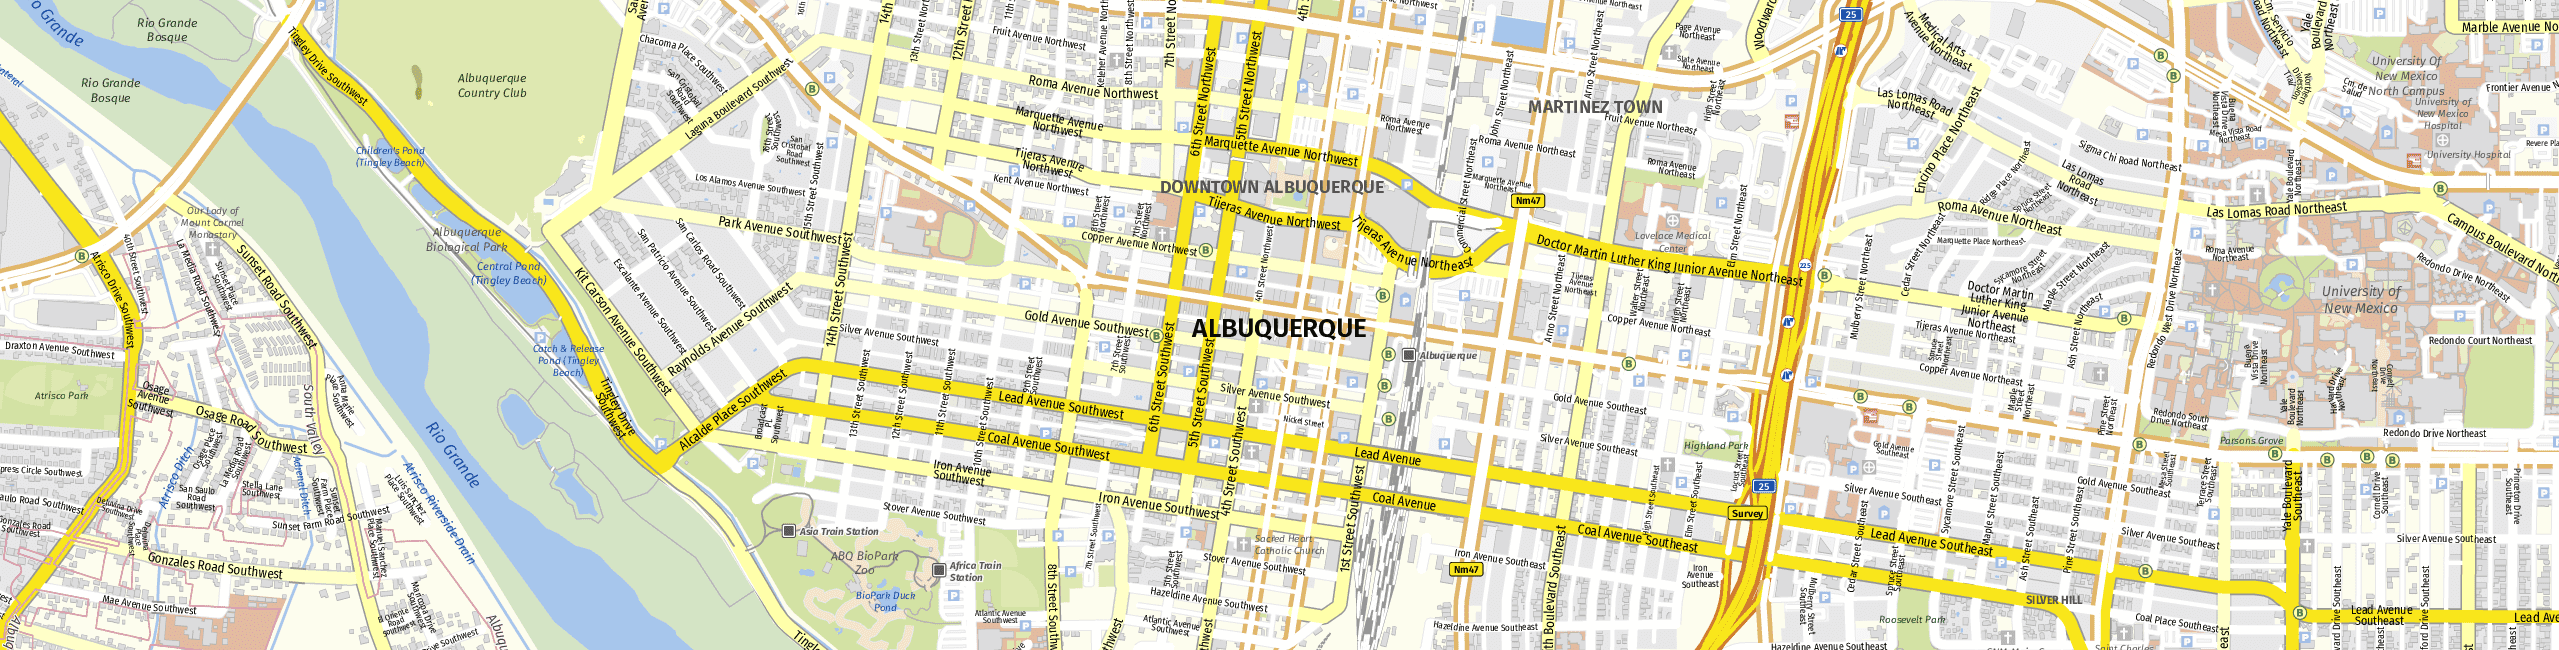 Stadtplan Albuquerque zum Downloaden.